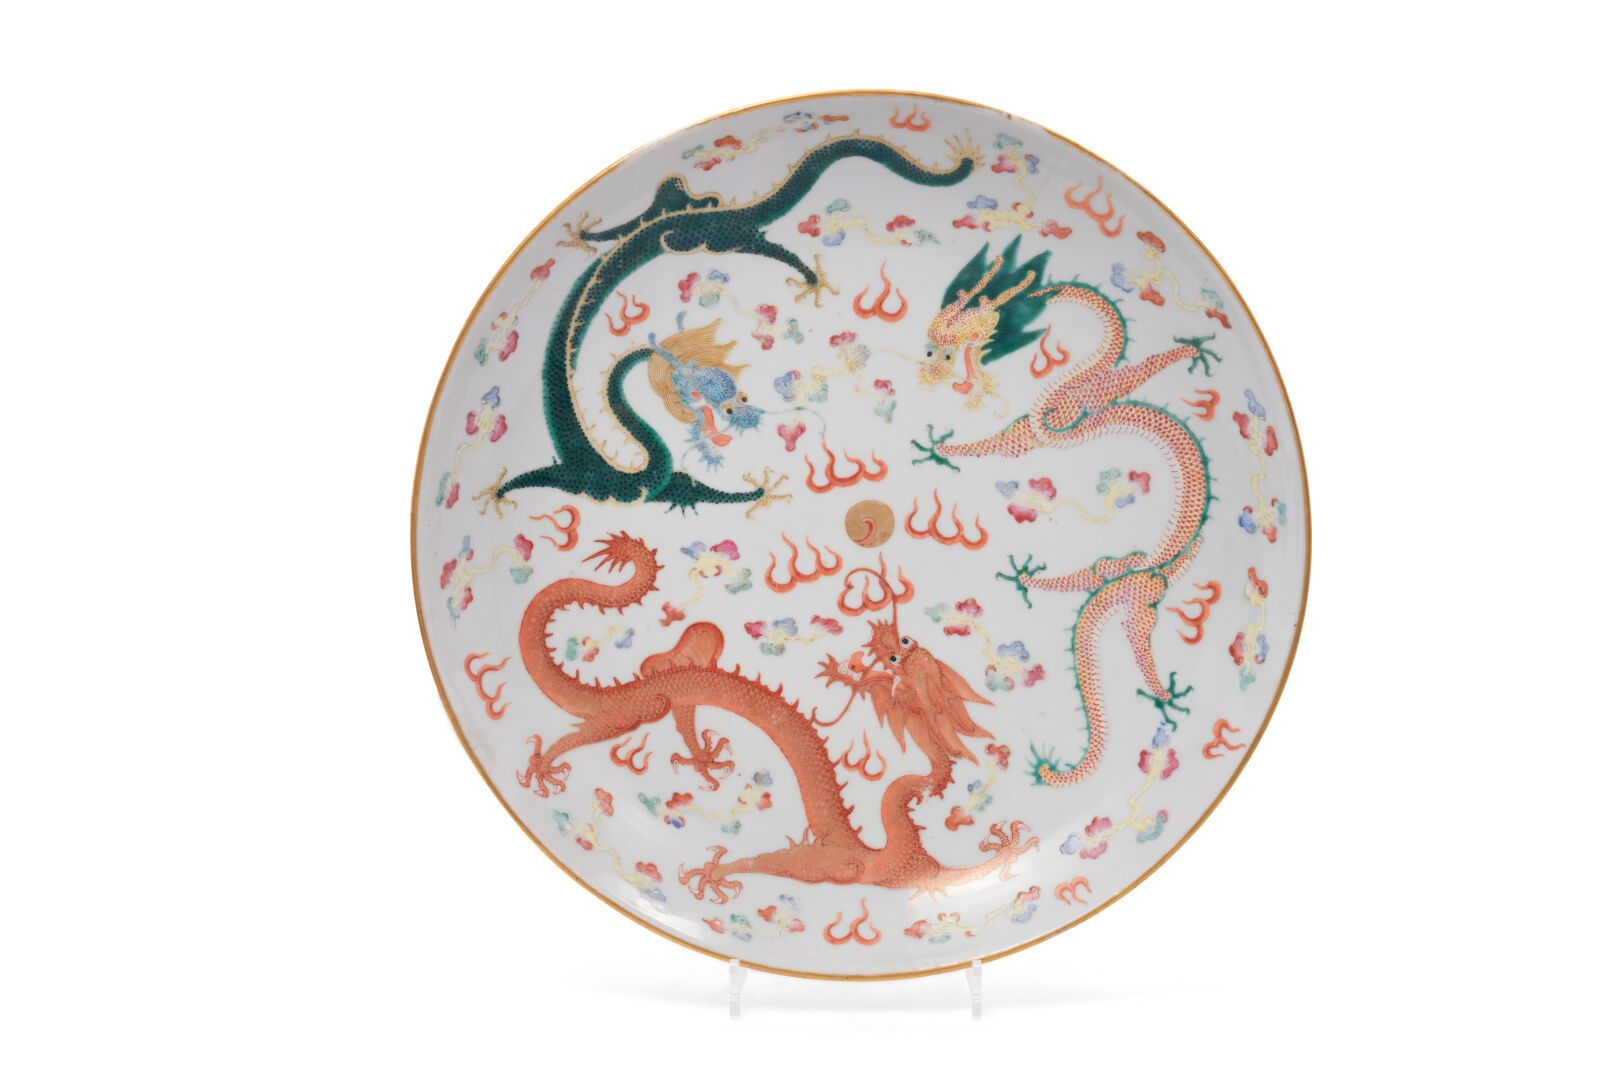 Null China
Runde Schale aus Porzellan mit polychromem Dekor aus Glasuren der ros&hellip;